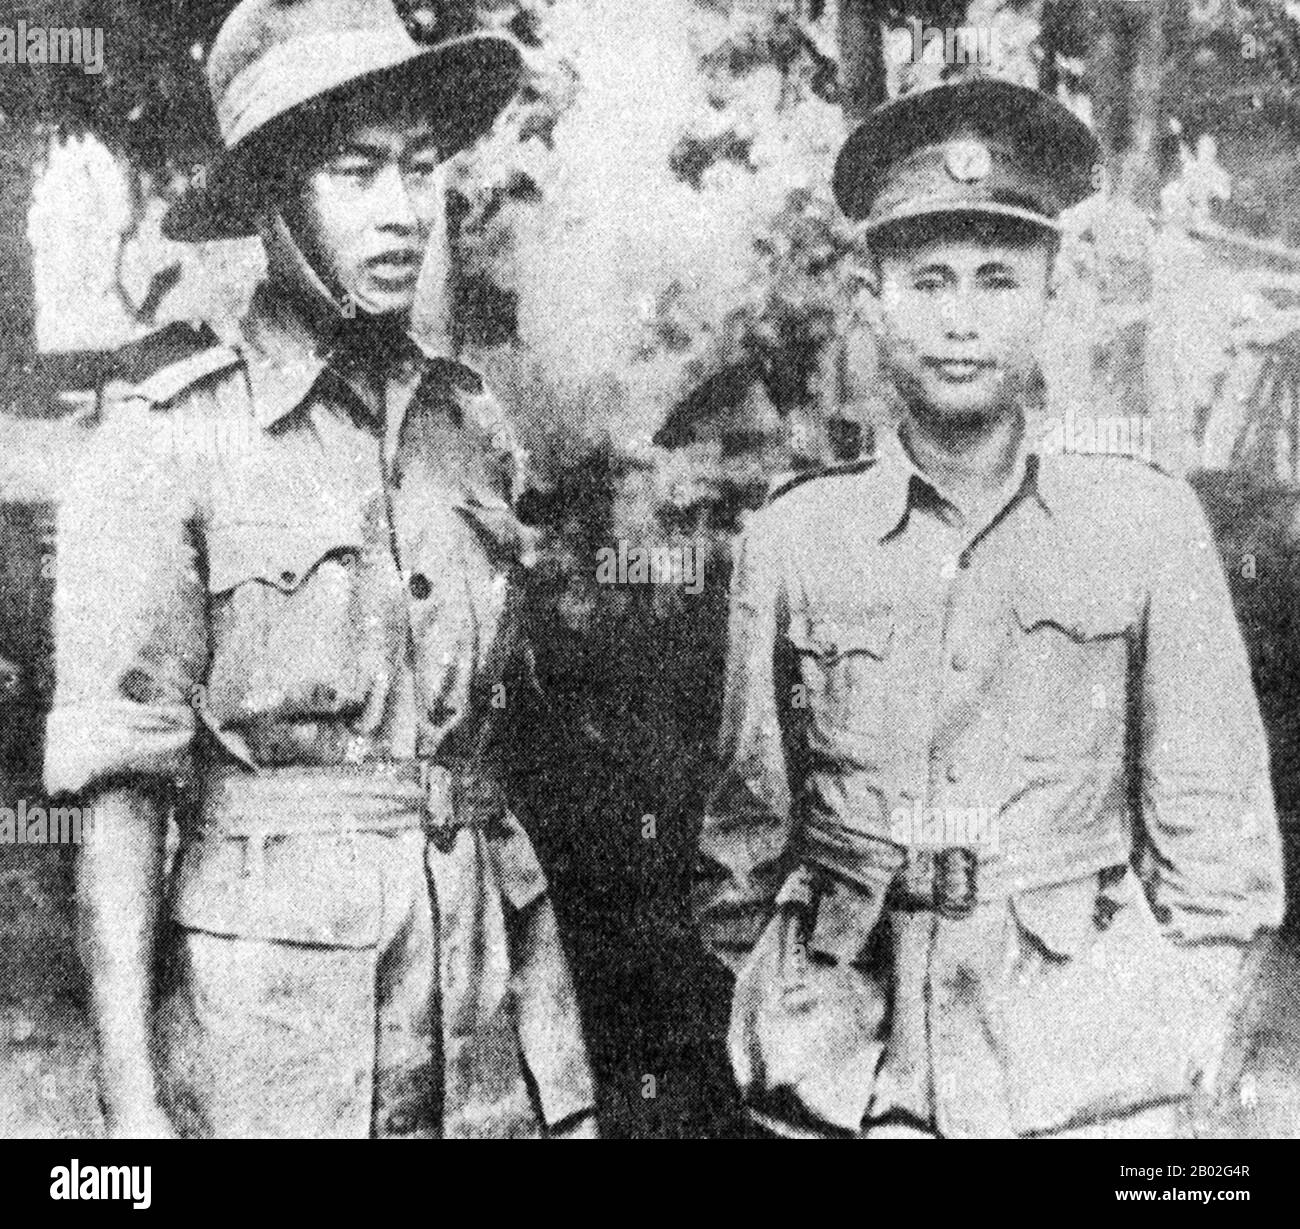 Bogyoke (Generale) Aung San (Tattadaw, 13 febbraio 1915 – 19 luglio 1947) è stato un . Fu fondatore del partito comunista birmano e fu determinante nel portare l'indipendenza della Birmania dal governo coloniale britannico, ma fu assassinato sei mesi prima del suo definitivo compimento. È riconosciuto come il principale architetto dell'indipendenza e fondatore dell'Unione della Birmania. Aung San è stato il padre del premio Nobel per la pace e del leader dell'opposizione Aung San Suu Kyi. Ne Win (nato il 24 maggio 1911 o il 10 luglio 1910 – 5 dicembre Foto Stock